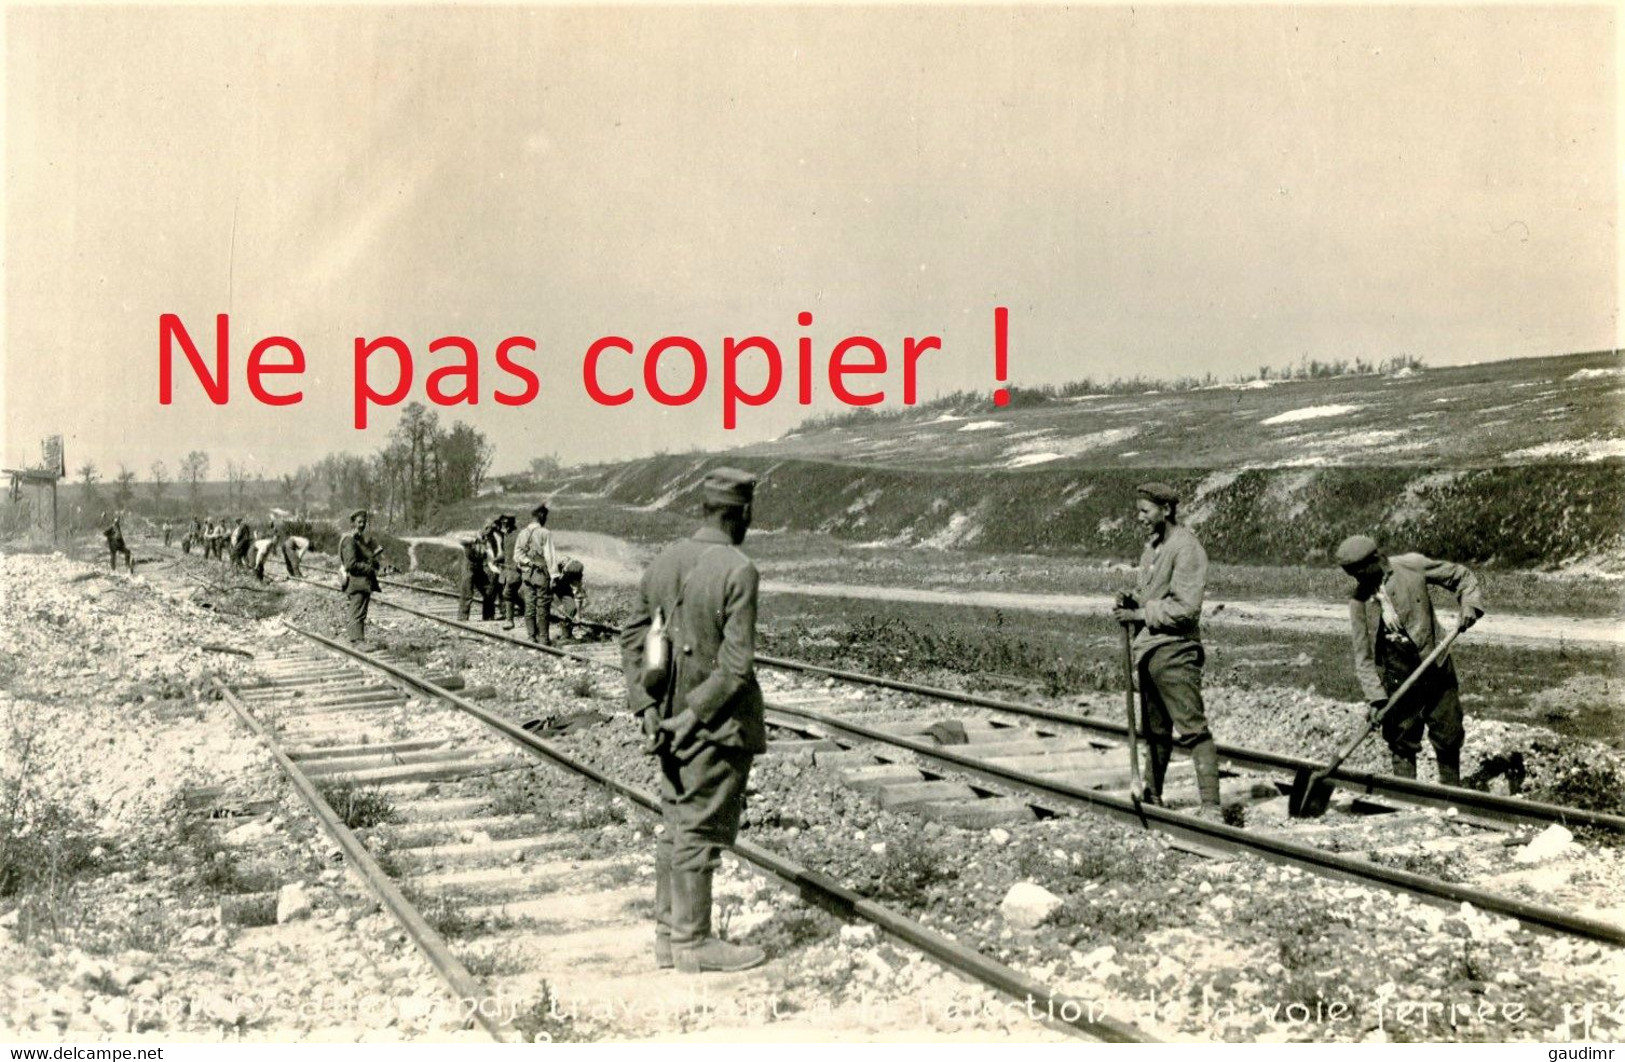 PHOTO FRANCAISE - PRISONNIERS ALLEMANDS REPARANT UNE VOIE FERREE A MONTDIDIER EN AOUT 1918 SOMME - GUERRE 1914 1918 - 1914-18